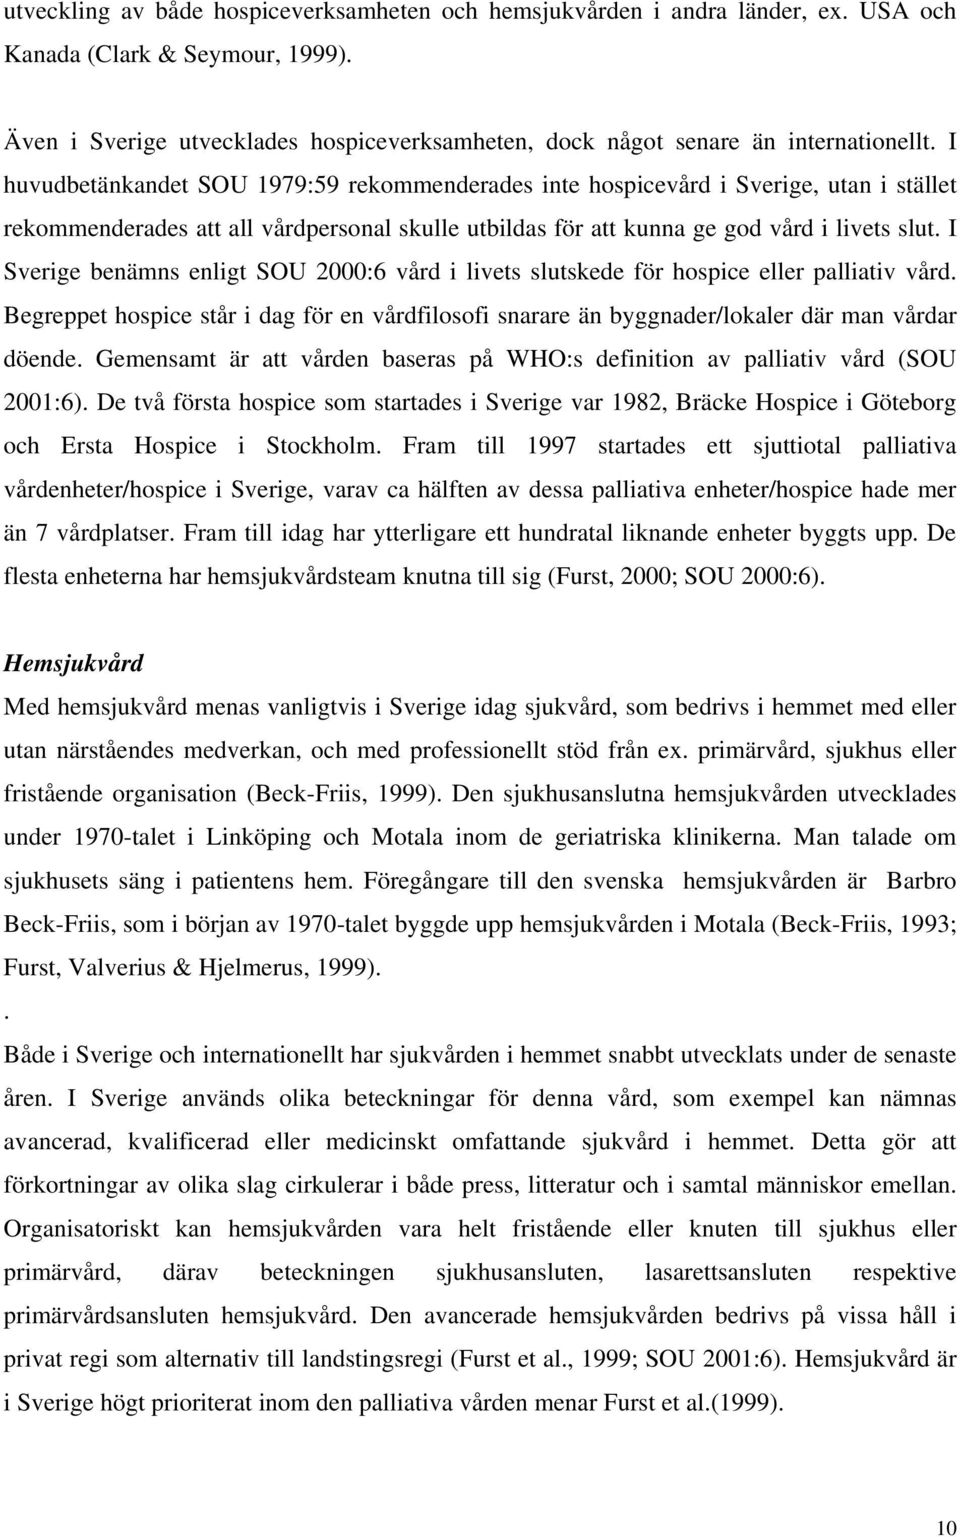 I huvudbetänkandet SOU 1979:59 rekommenderades inte hospicevård i Sverige, utan i stället rekommenderades att all vårdpersonal skulle utbildas för att kunna ge god vård i livets slut.